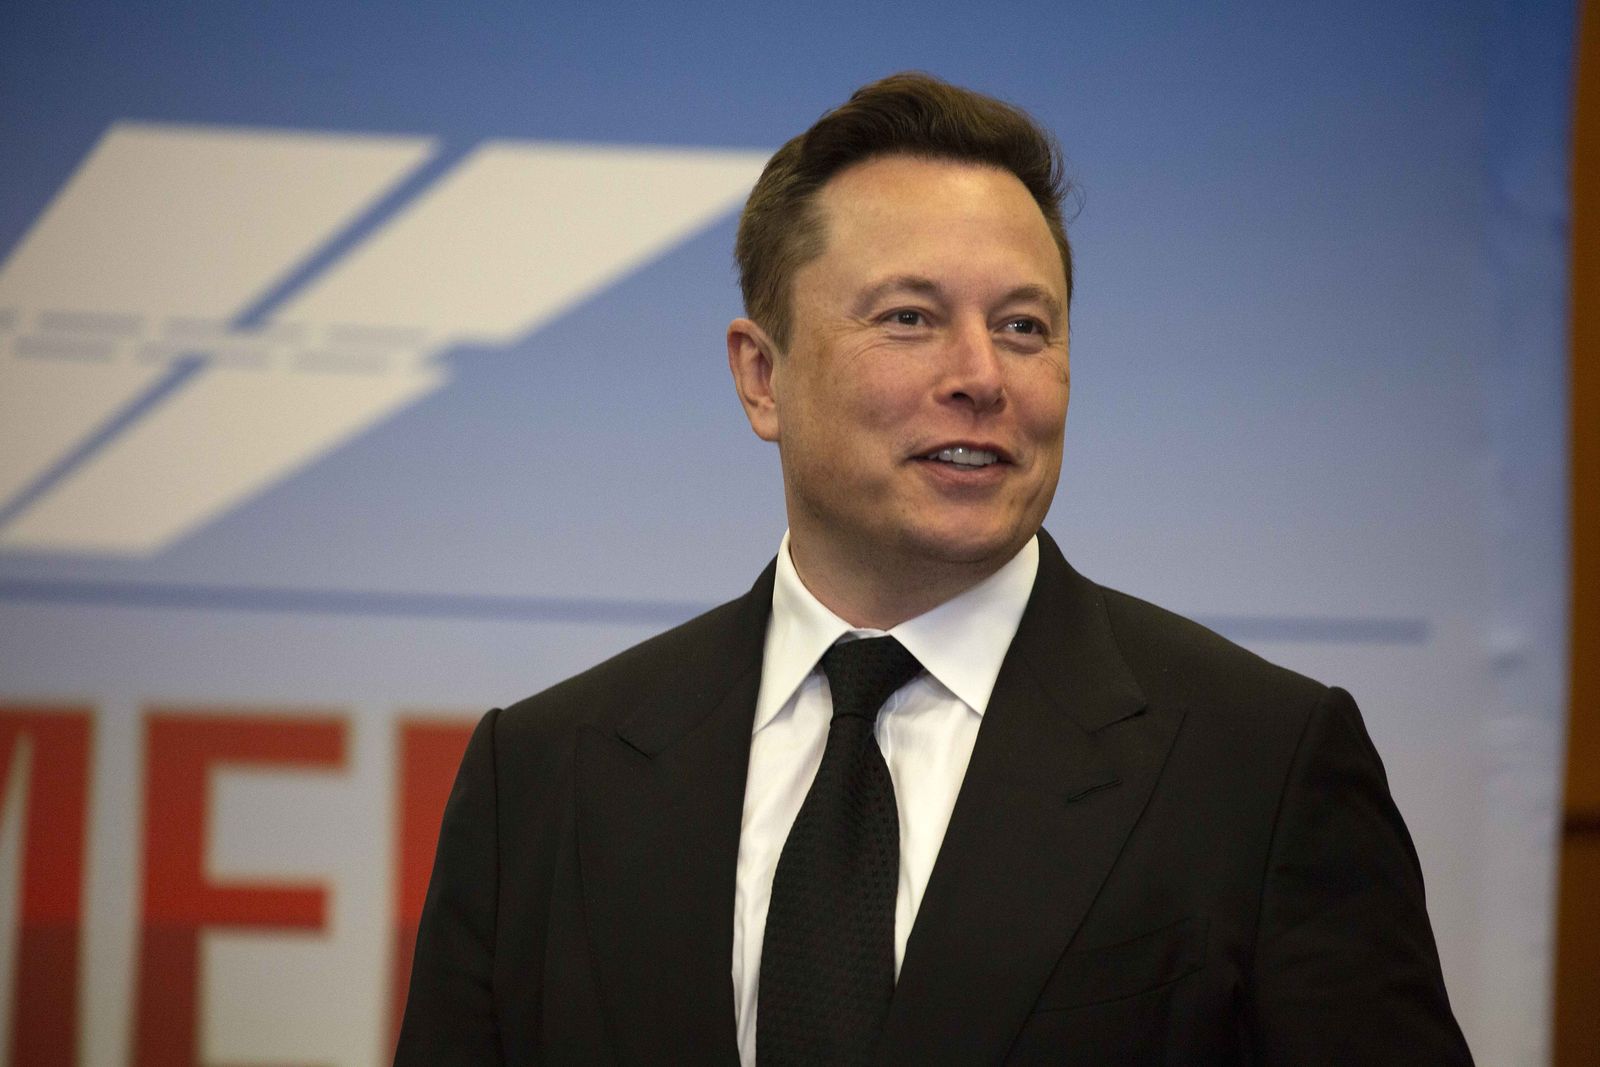 Elon Musk Wants to Test Brain Implants in People